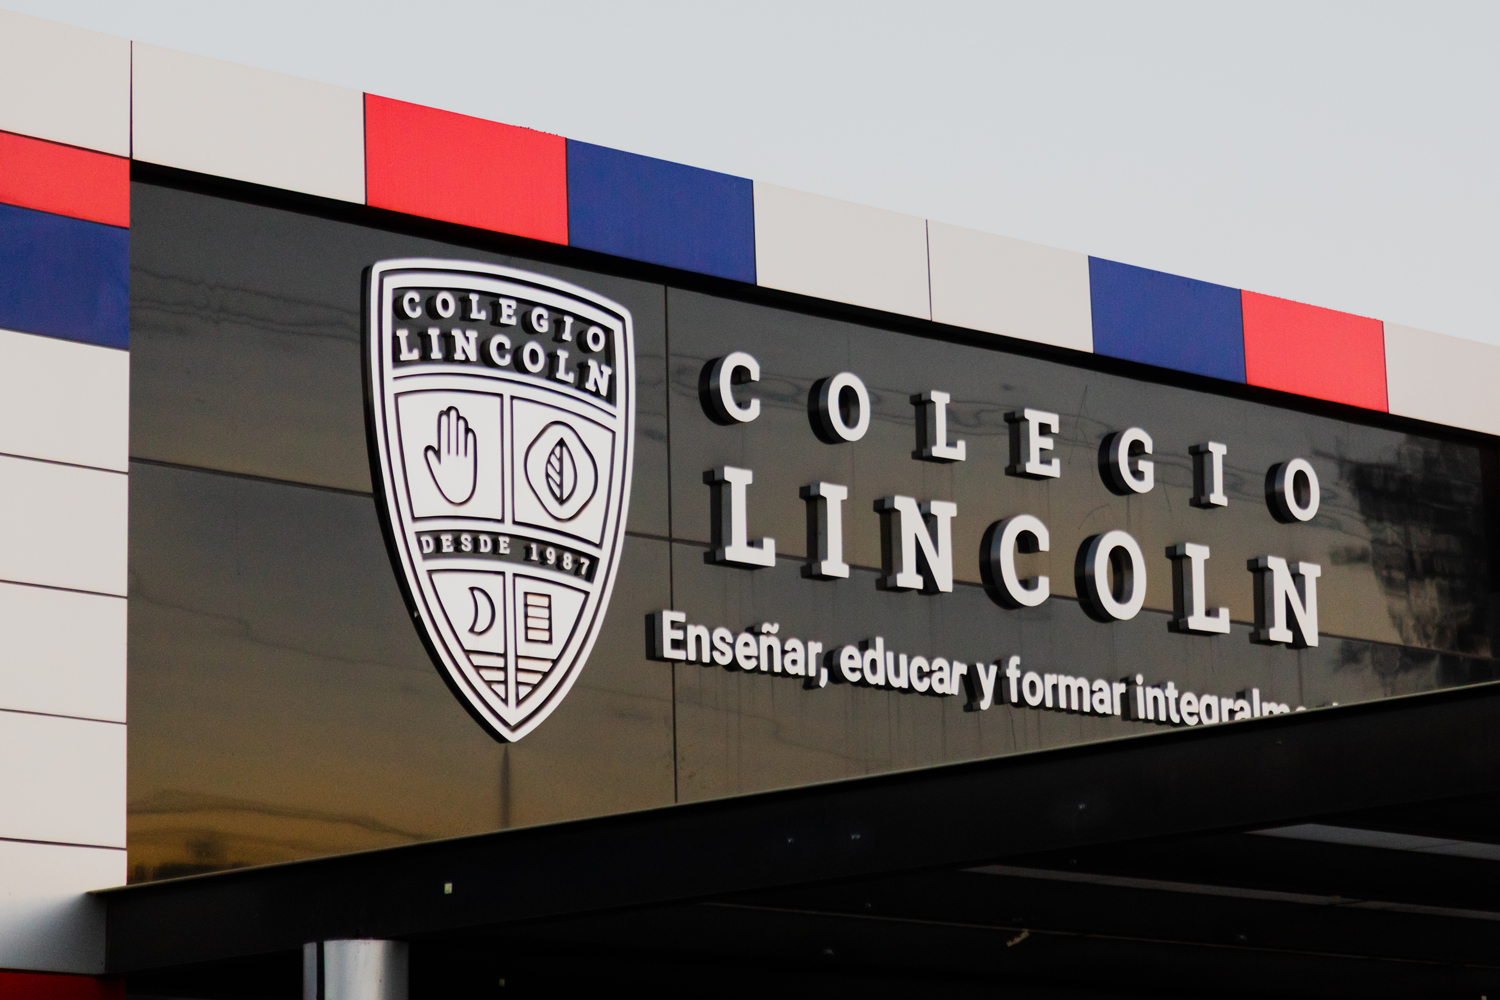 Colegio Lincoln School Rebranding by Mínimo Estudio